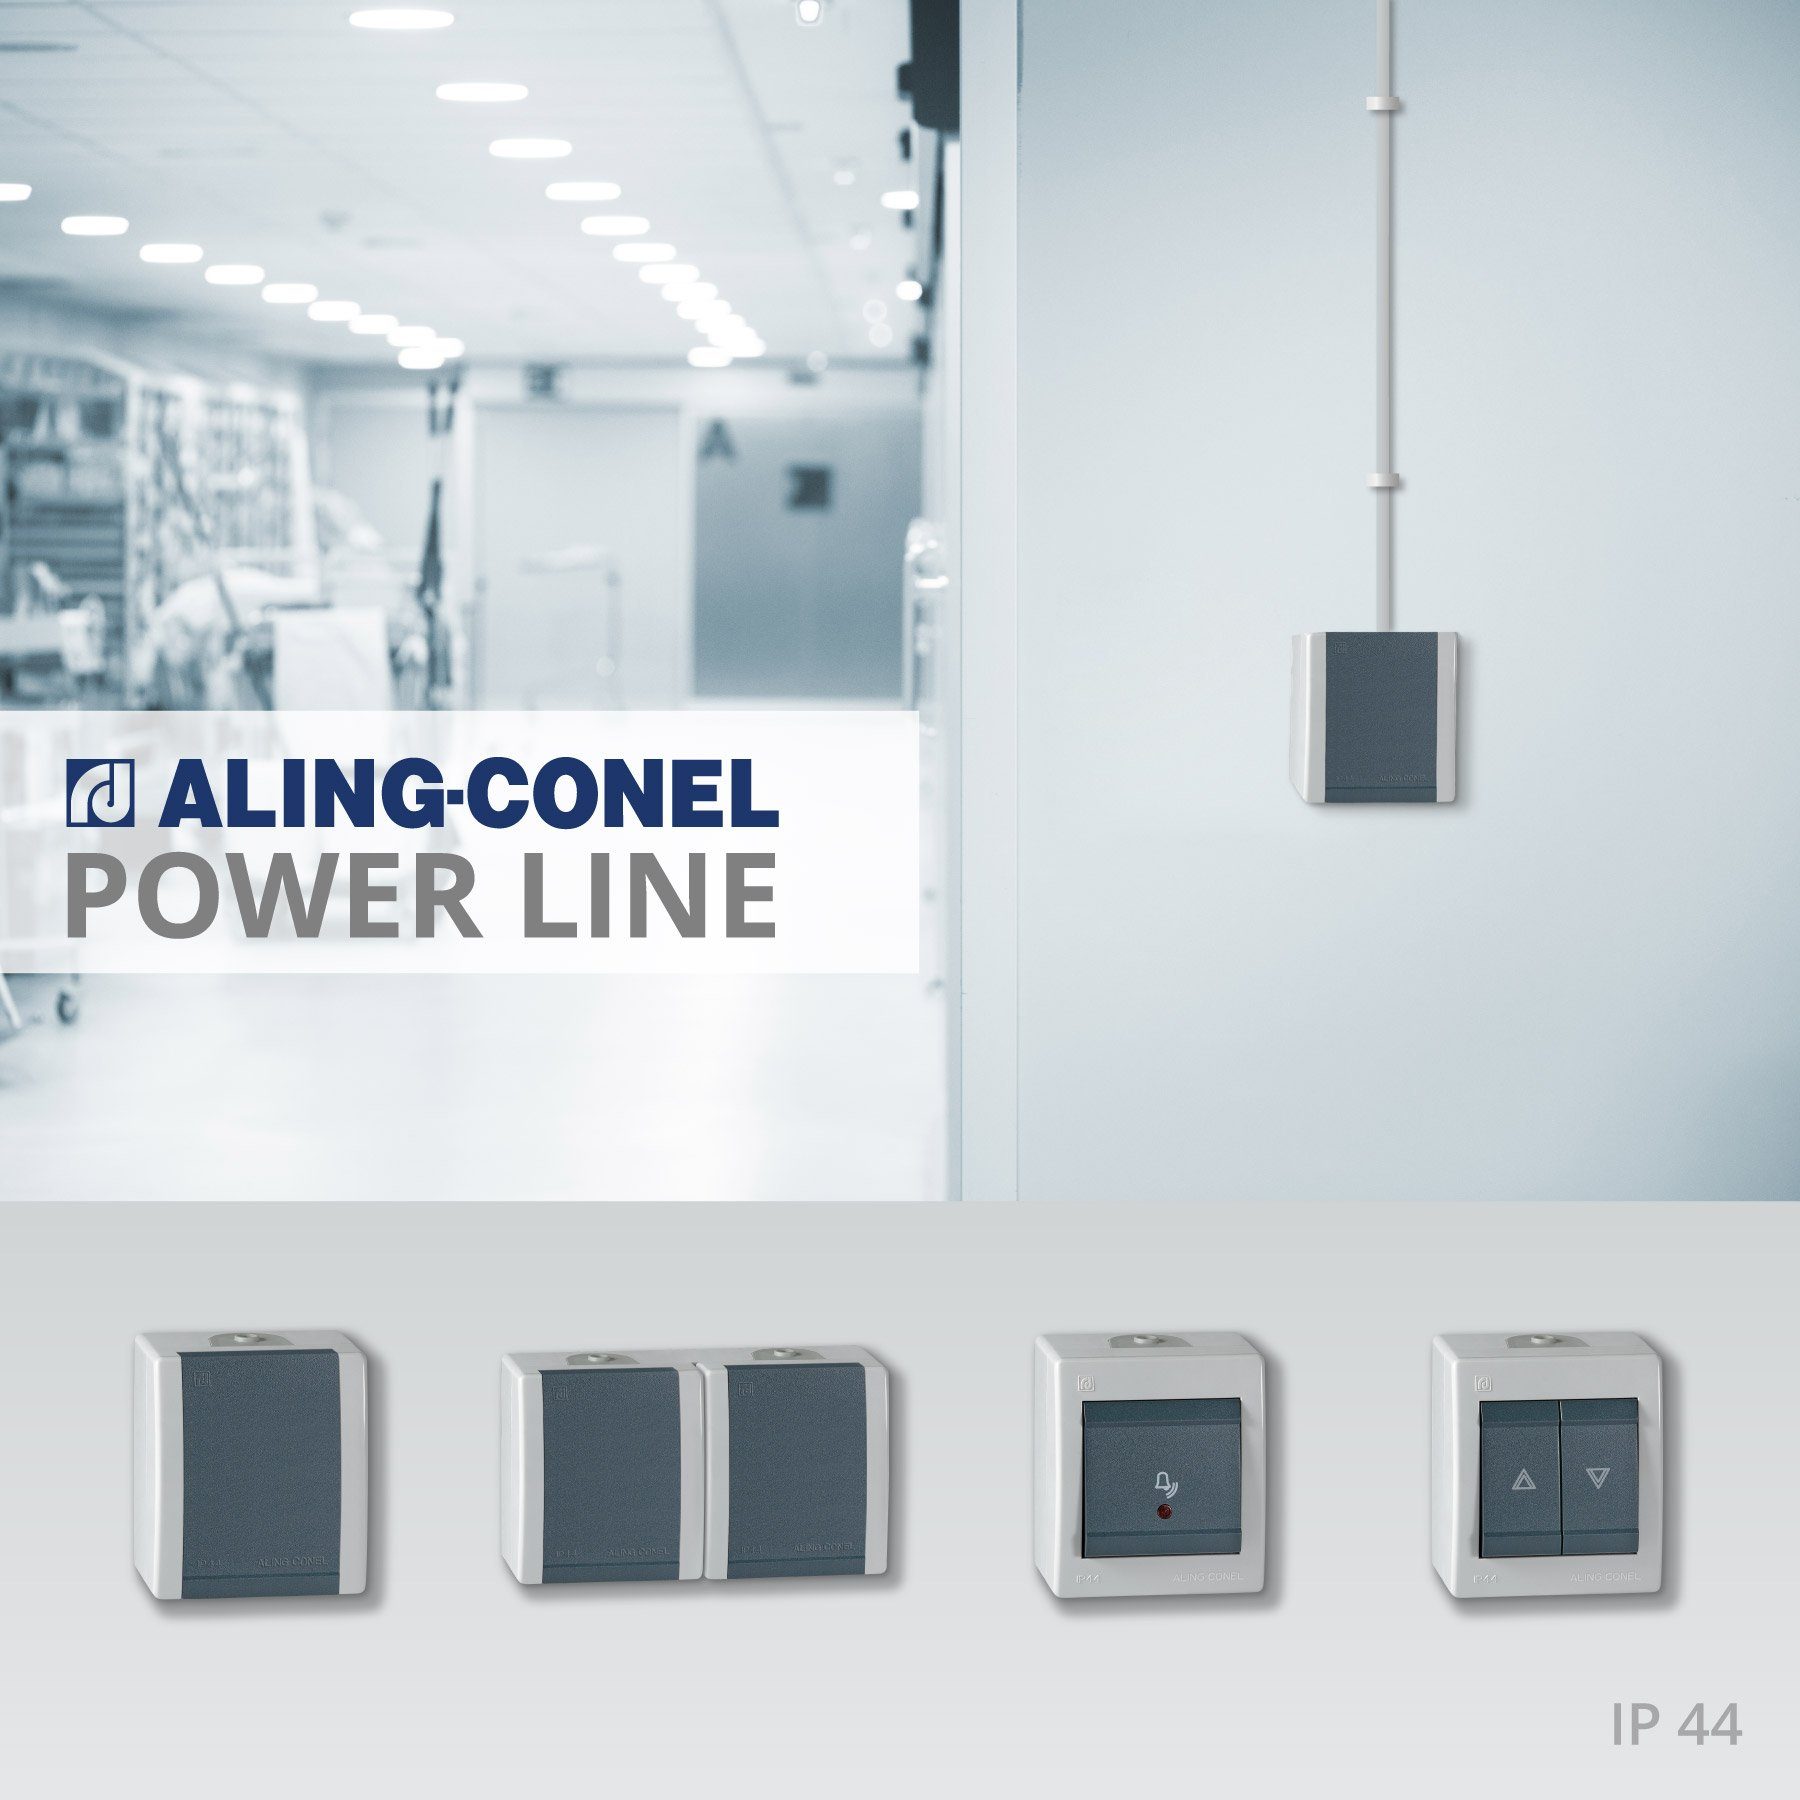 Schalter Line Conel weiß IP Power Aufputz-Taster, Aling 44